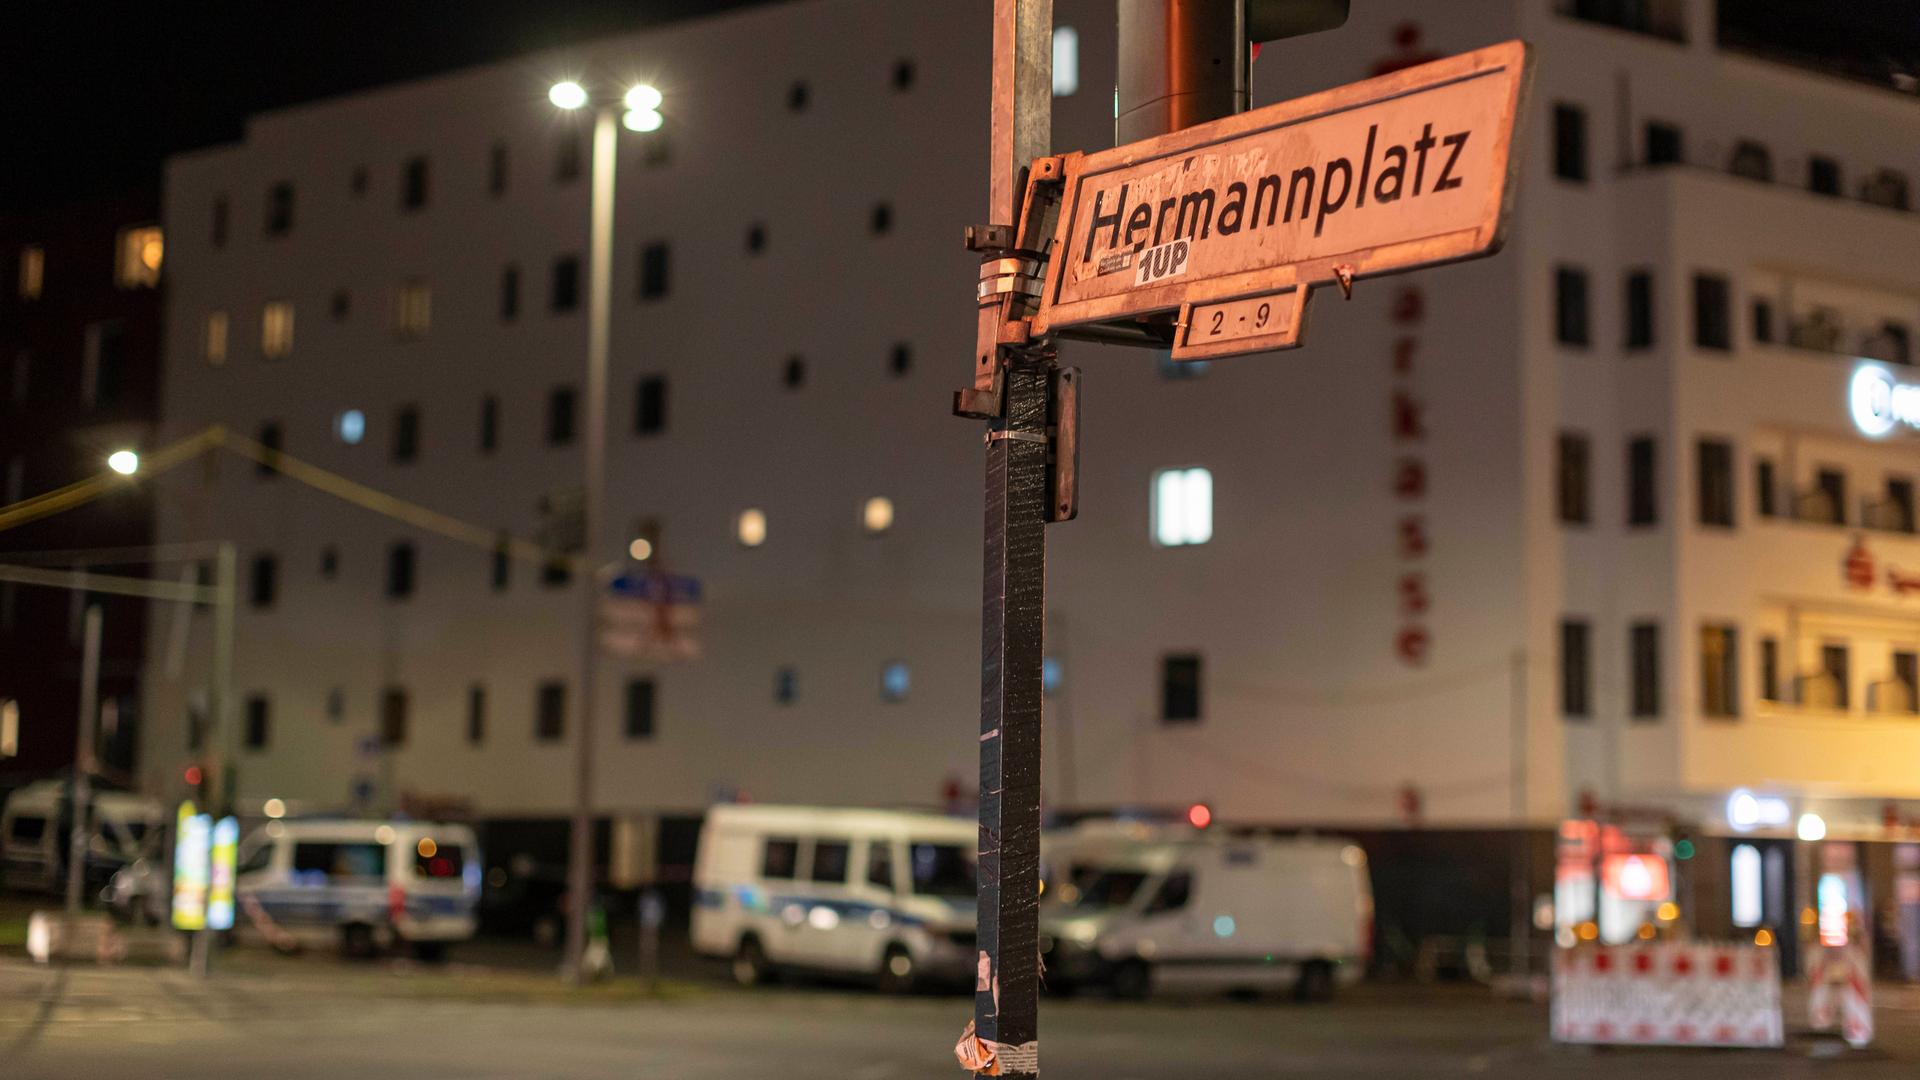 Zu sehen ist ein Straßenschild mit der Aufschrift "Hermannplatz" in Berlin-Neukölln.